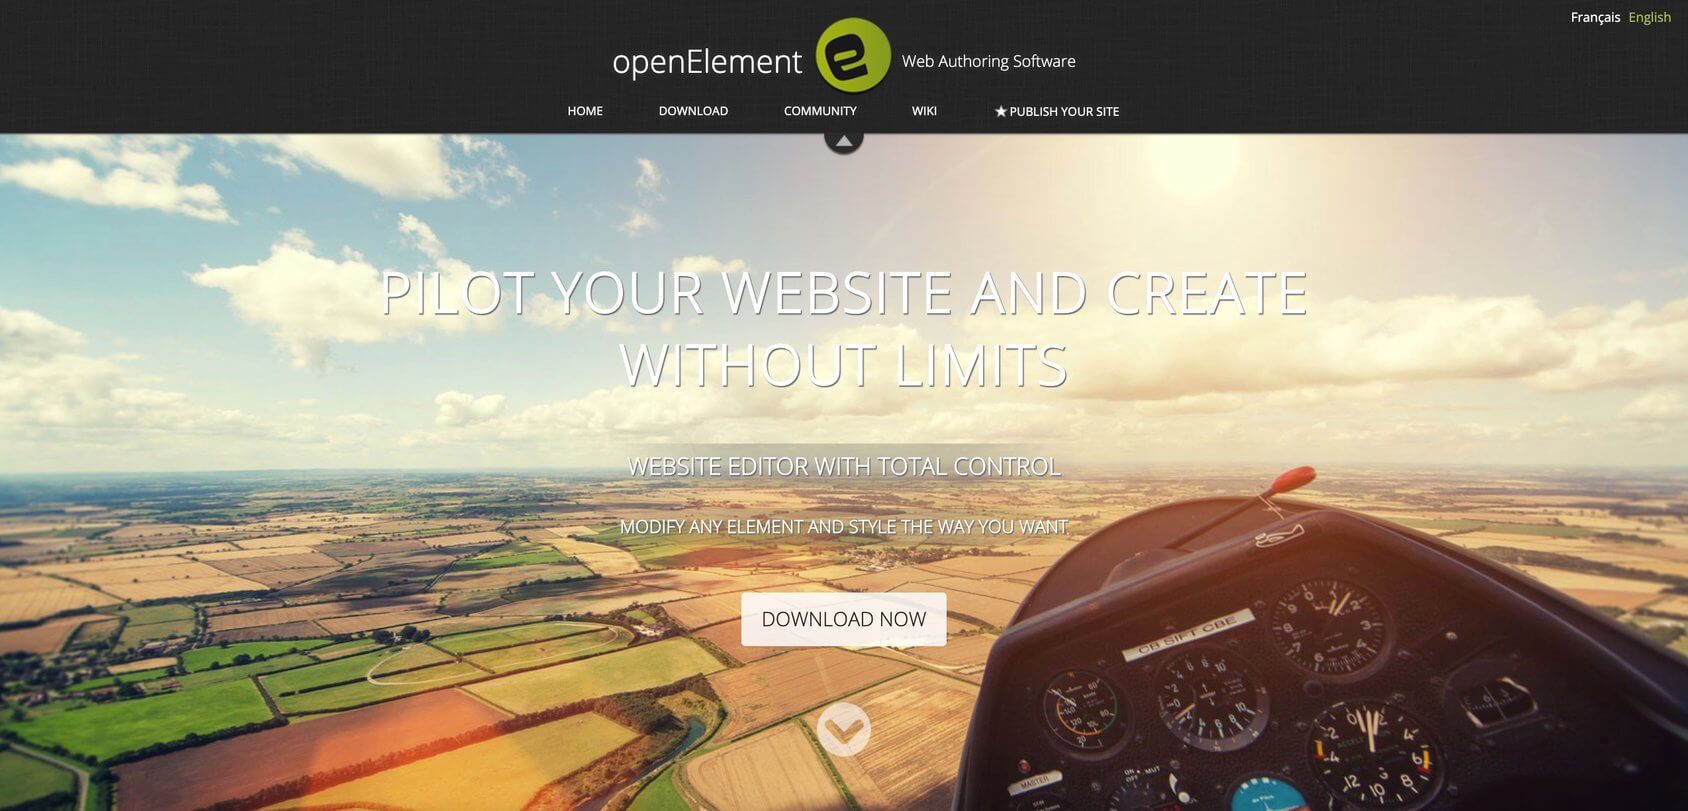 openElement homepage